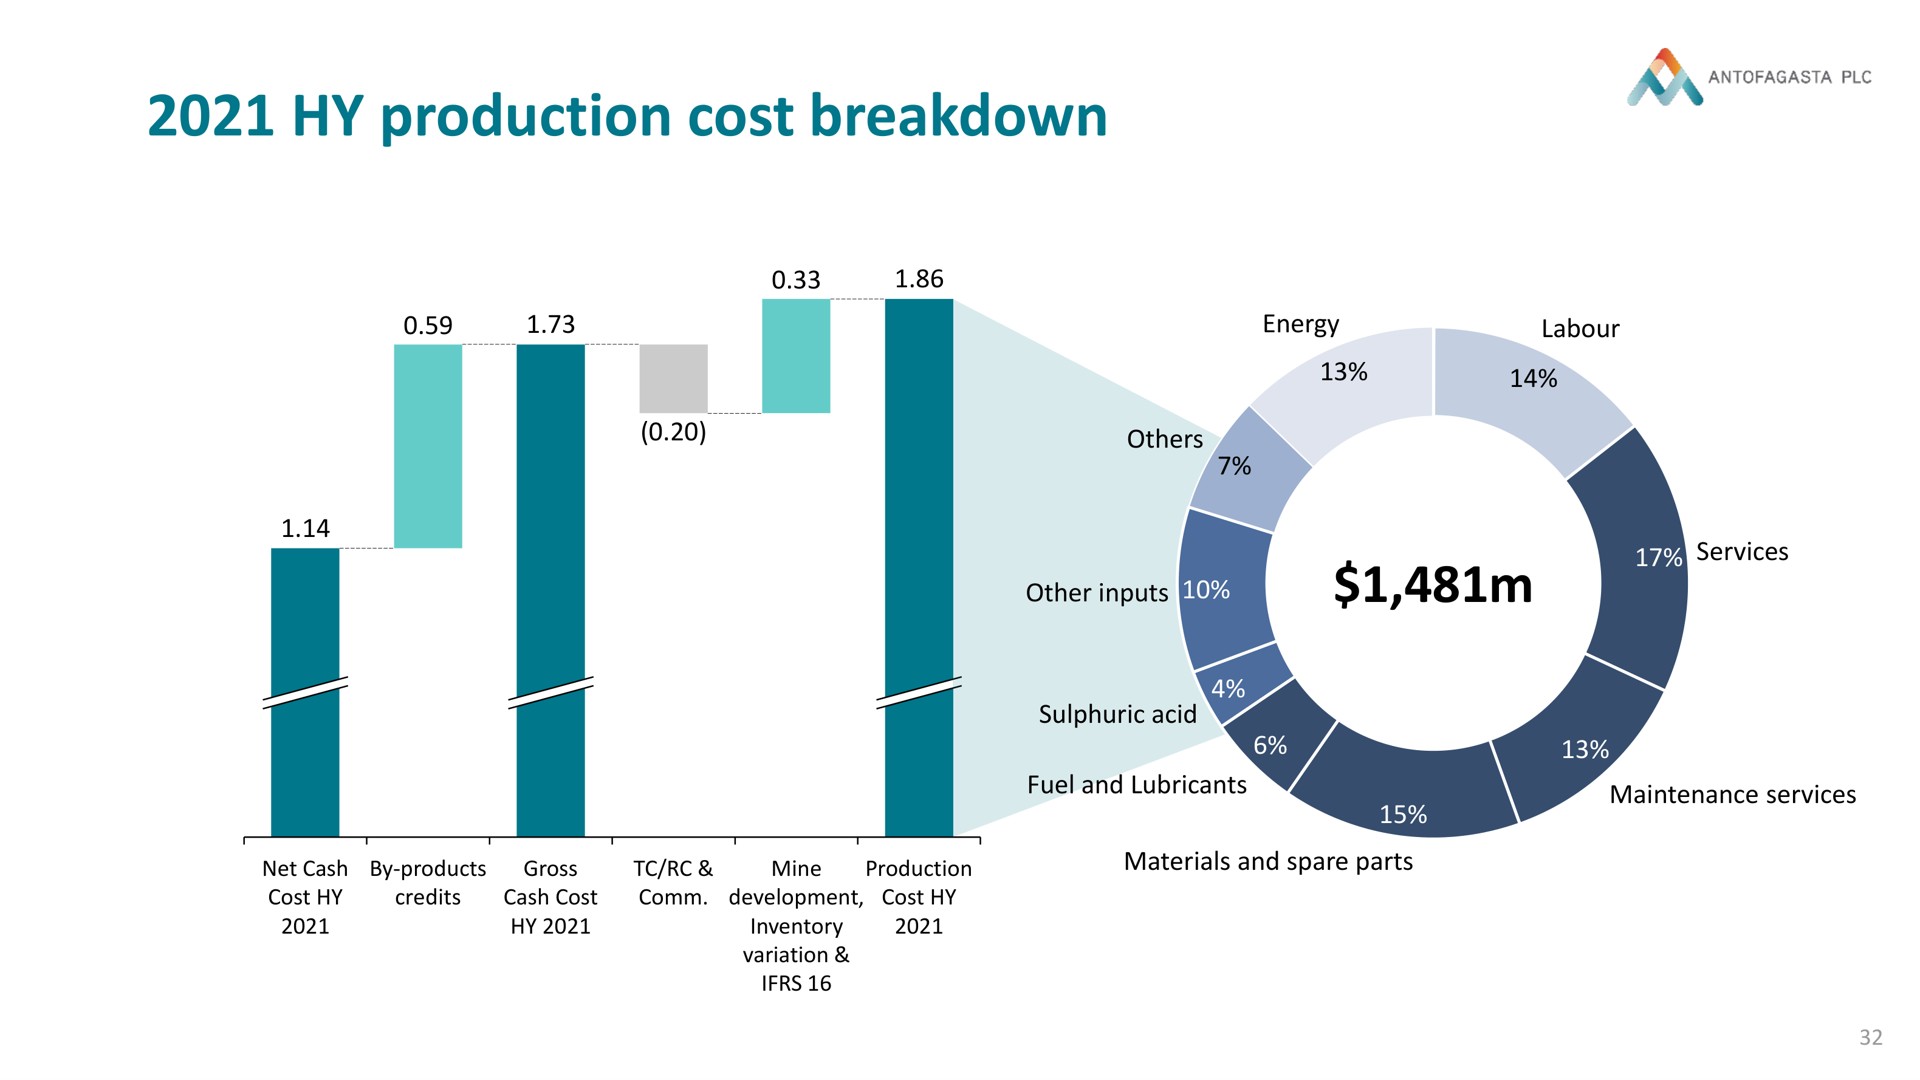 production cost breakdown | Antofagasta